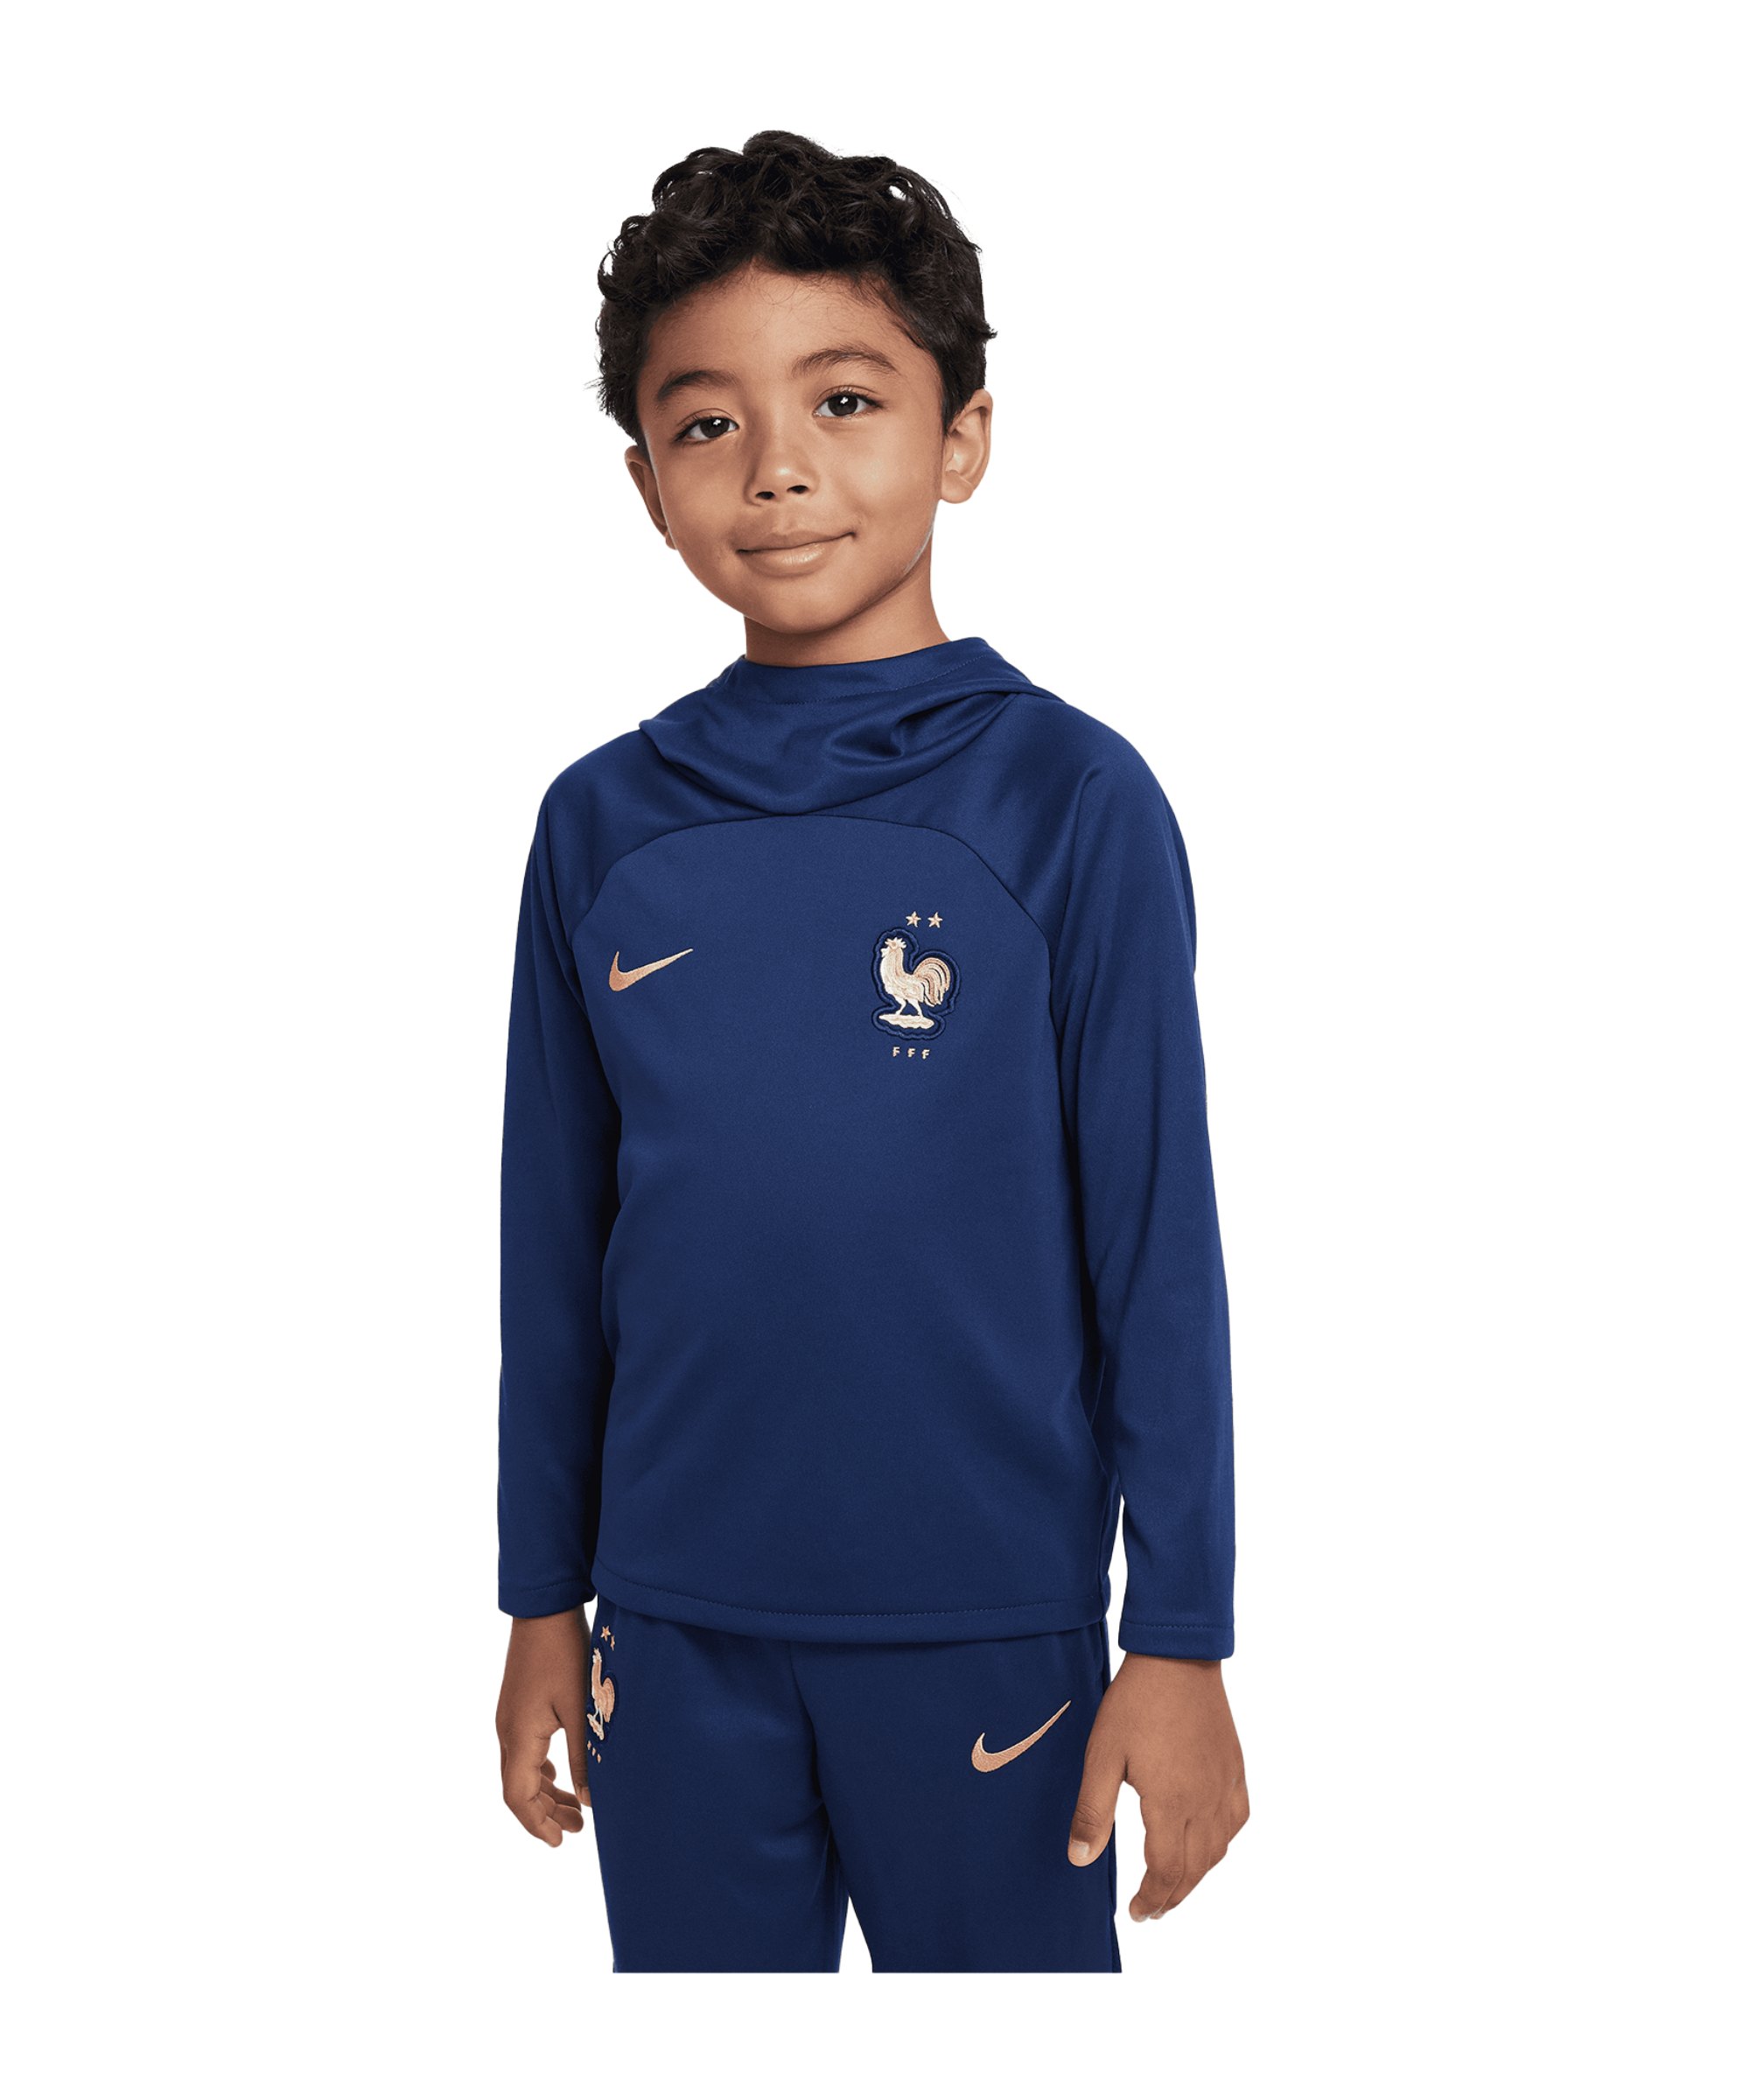 Nike Frankreich Hoody Kids Dunkelblau F410 - blau